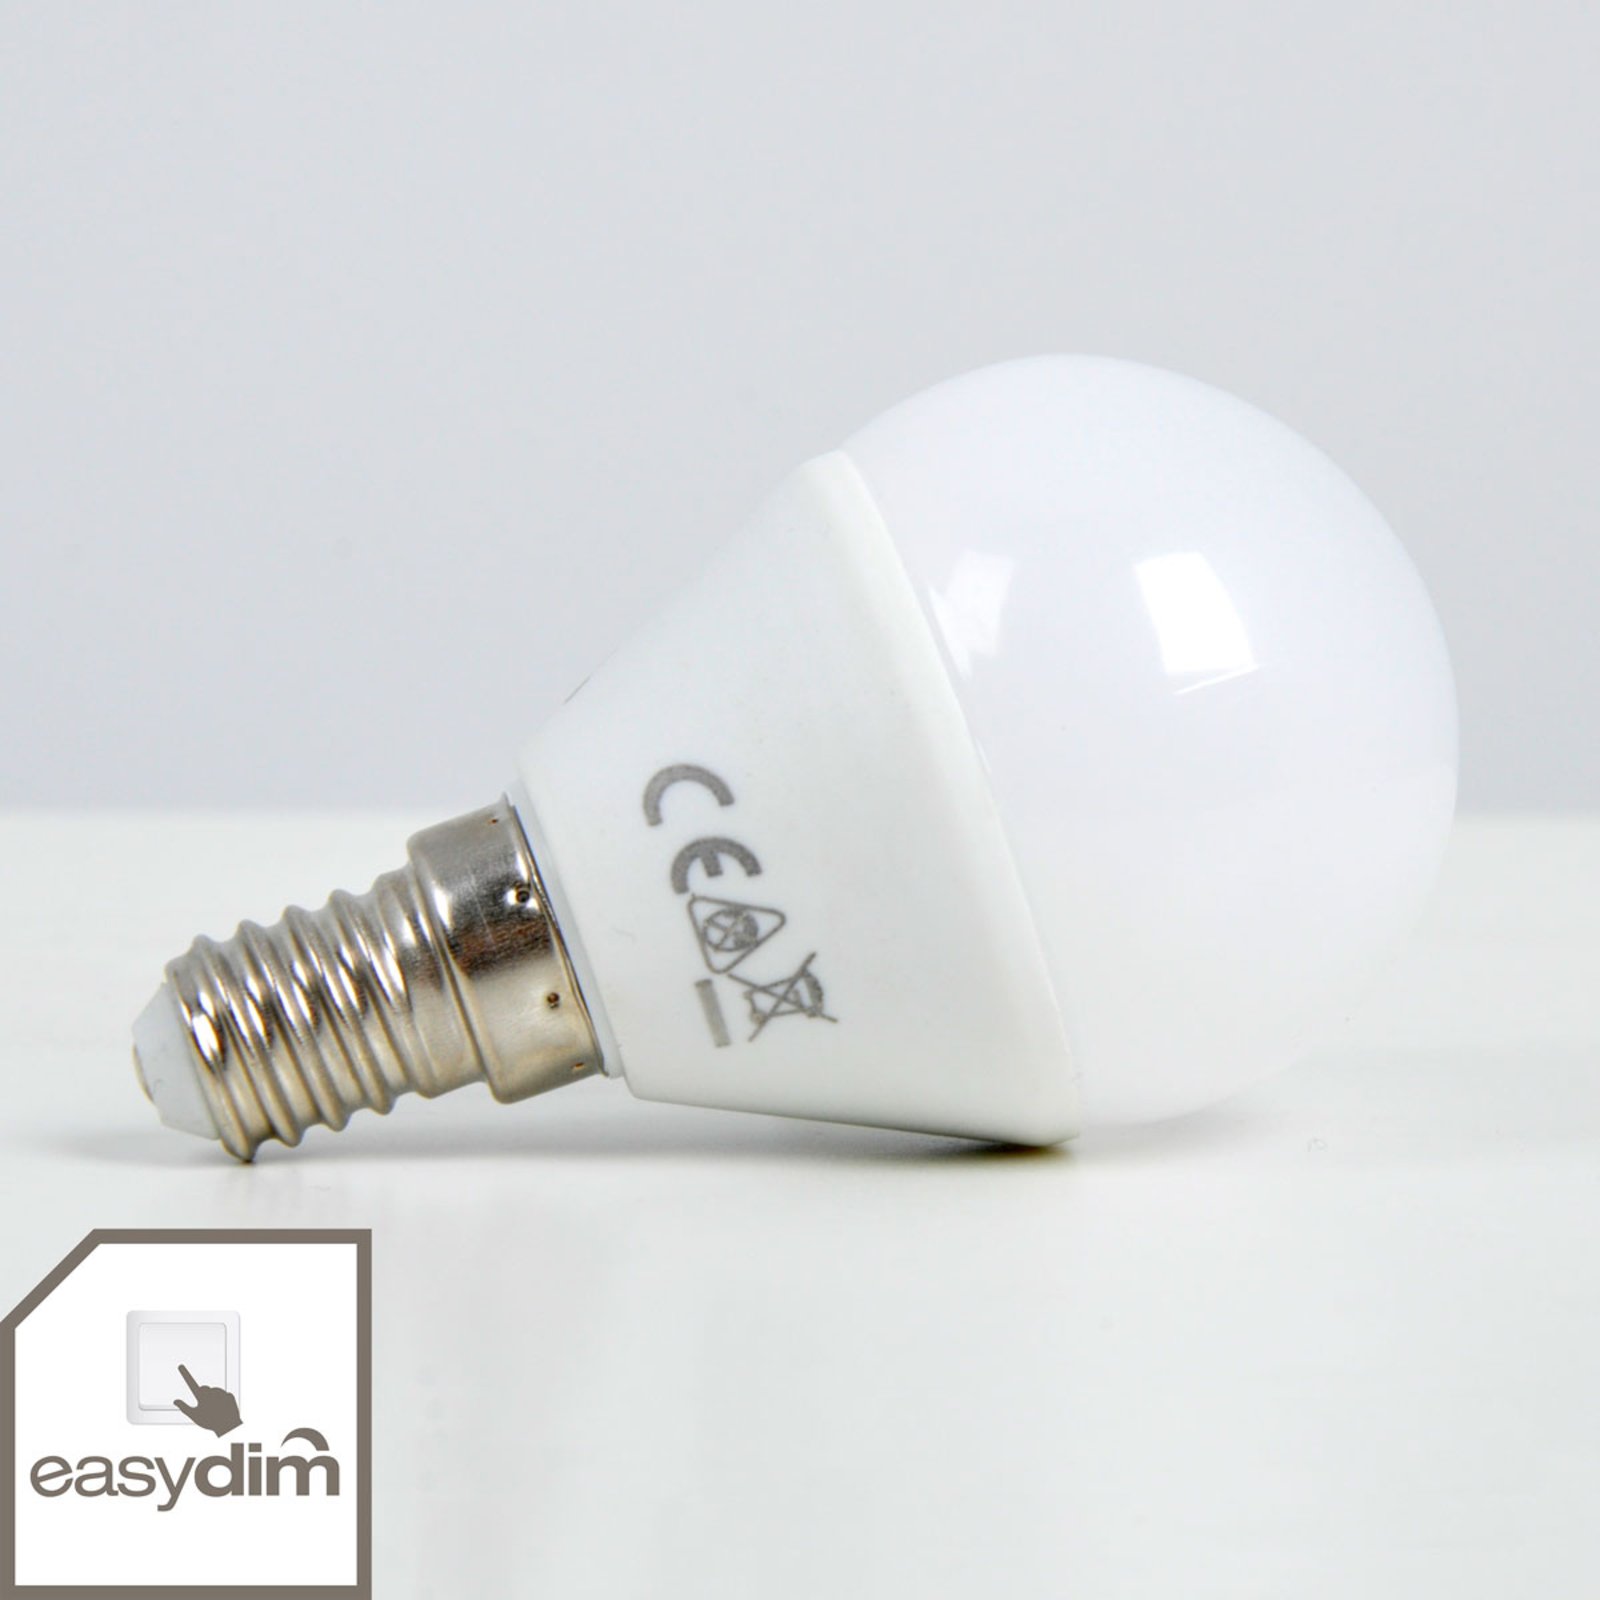 Λαμπτήρας LED E14 5W, ζεστό λευκό, easydim